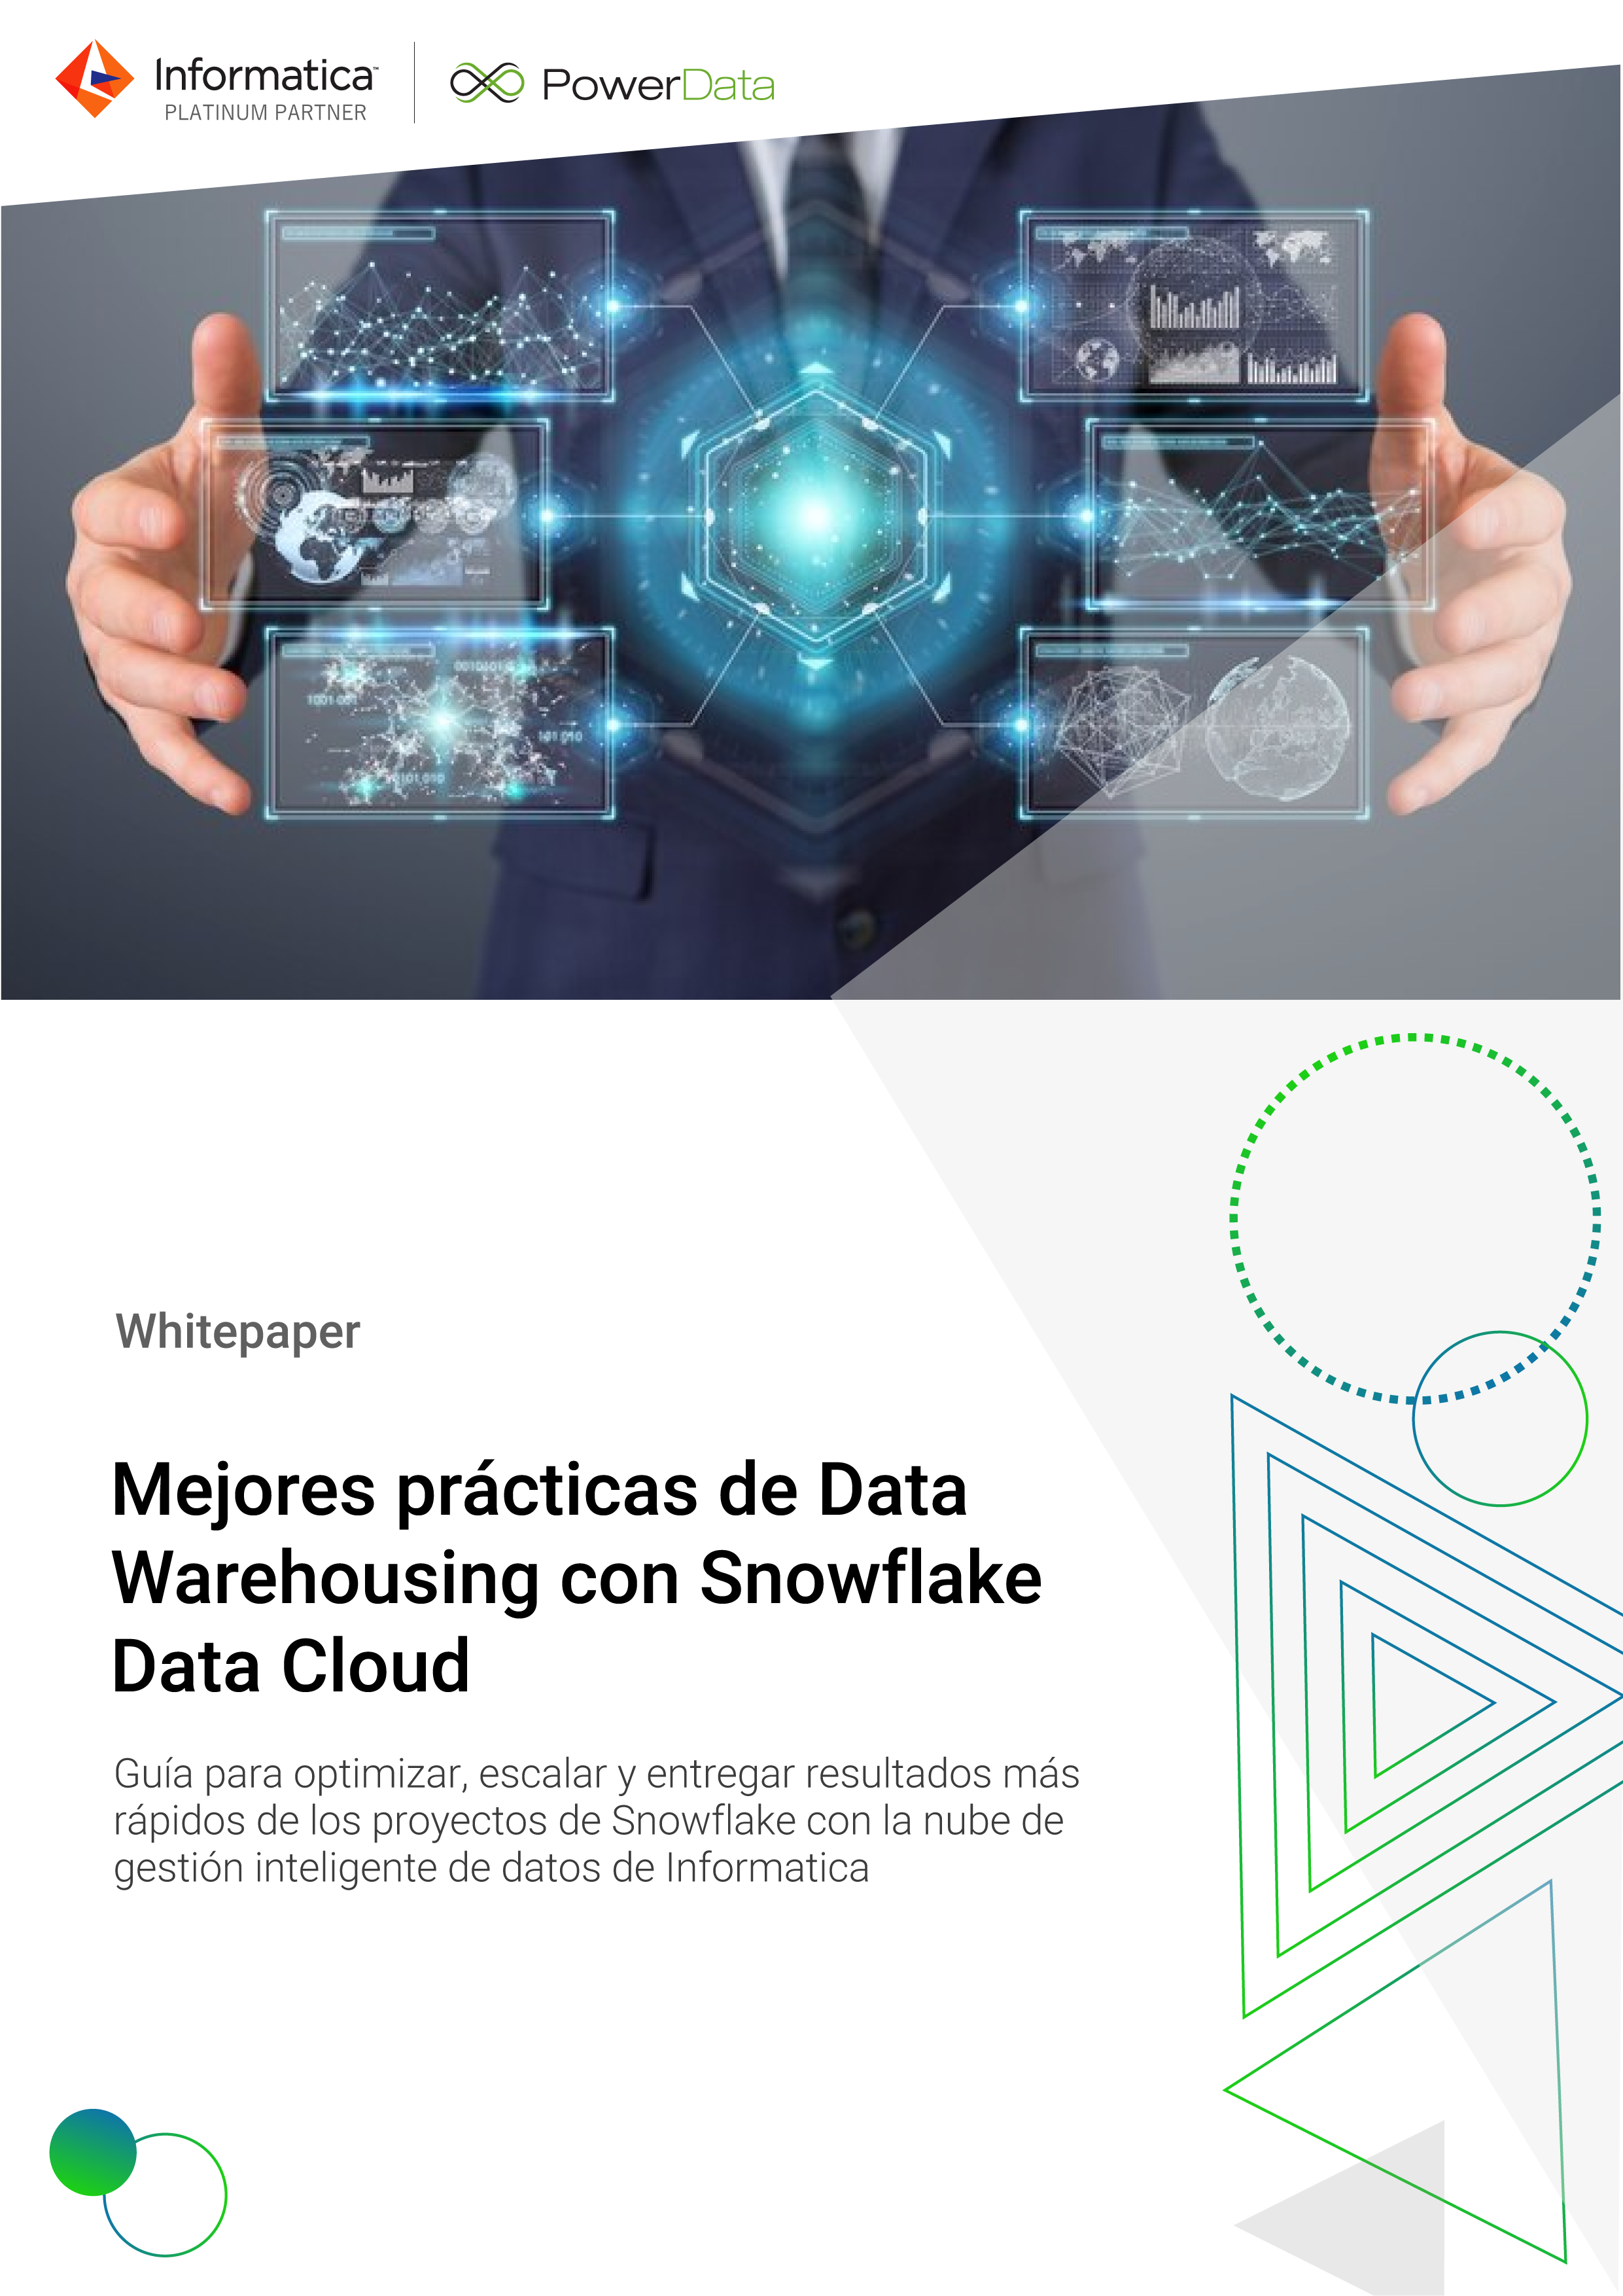 Portada - Mejores prácticas de Data Warehousing con Snowflake Data Cloud-01